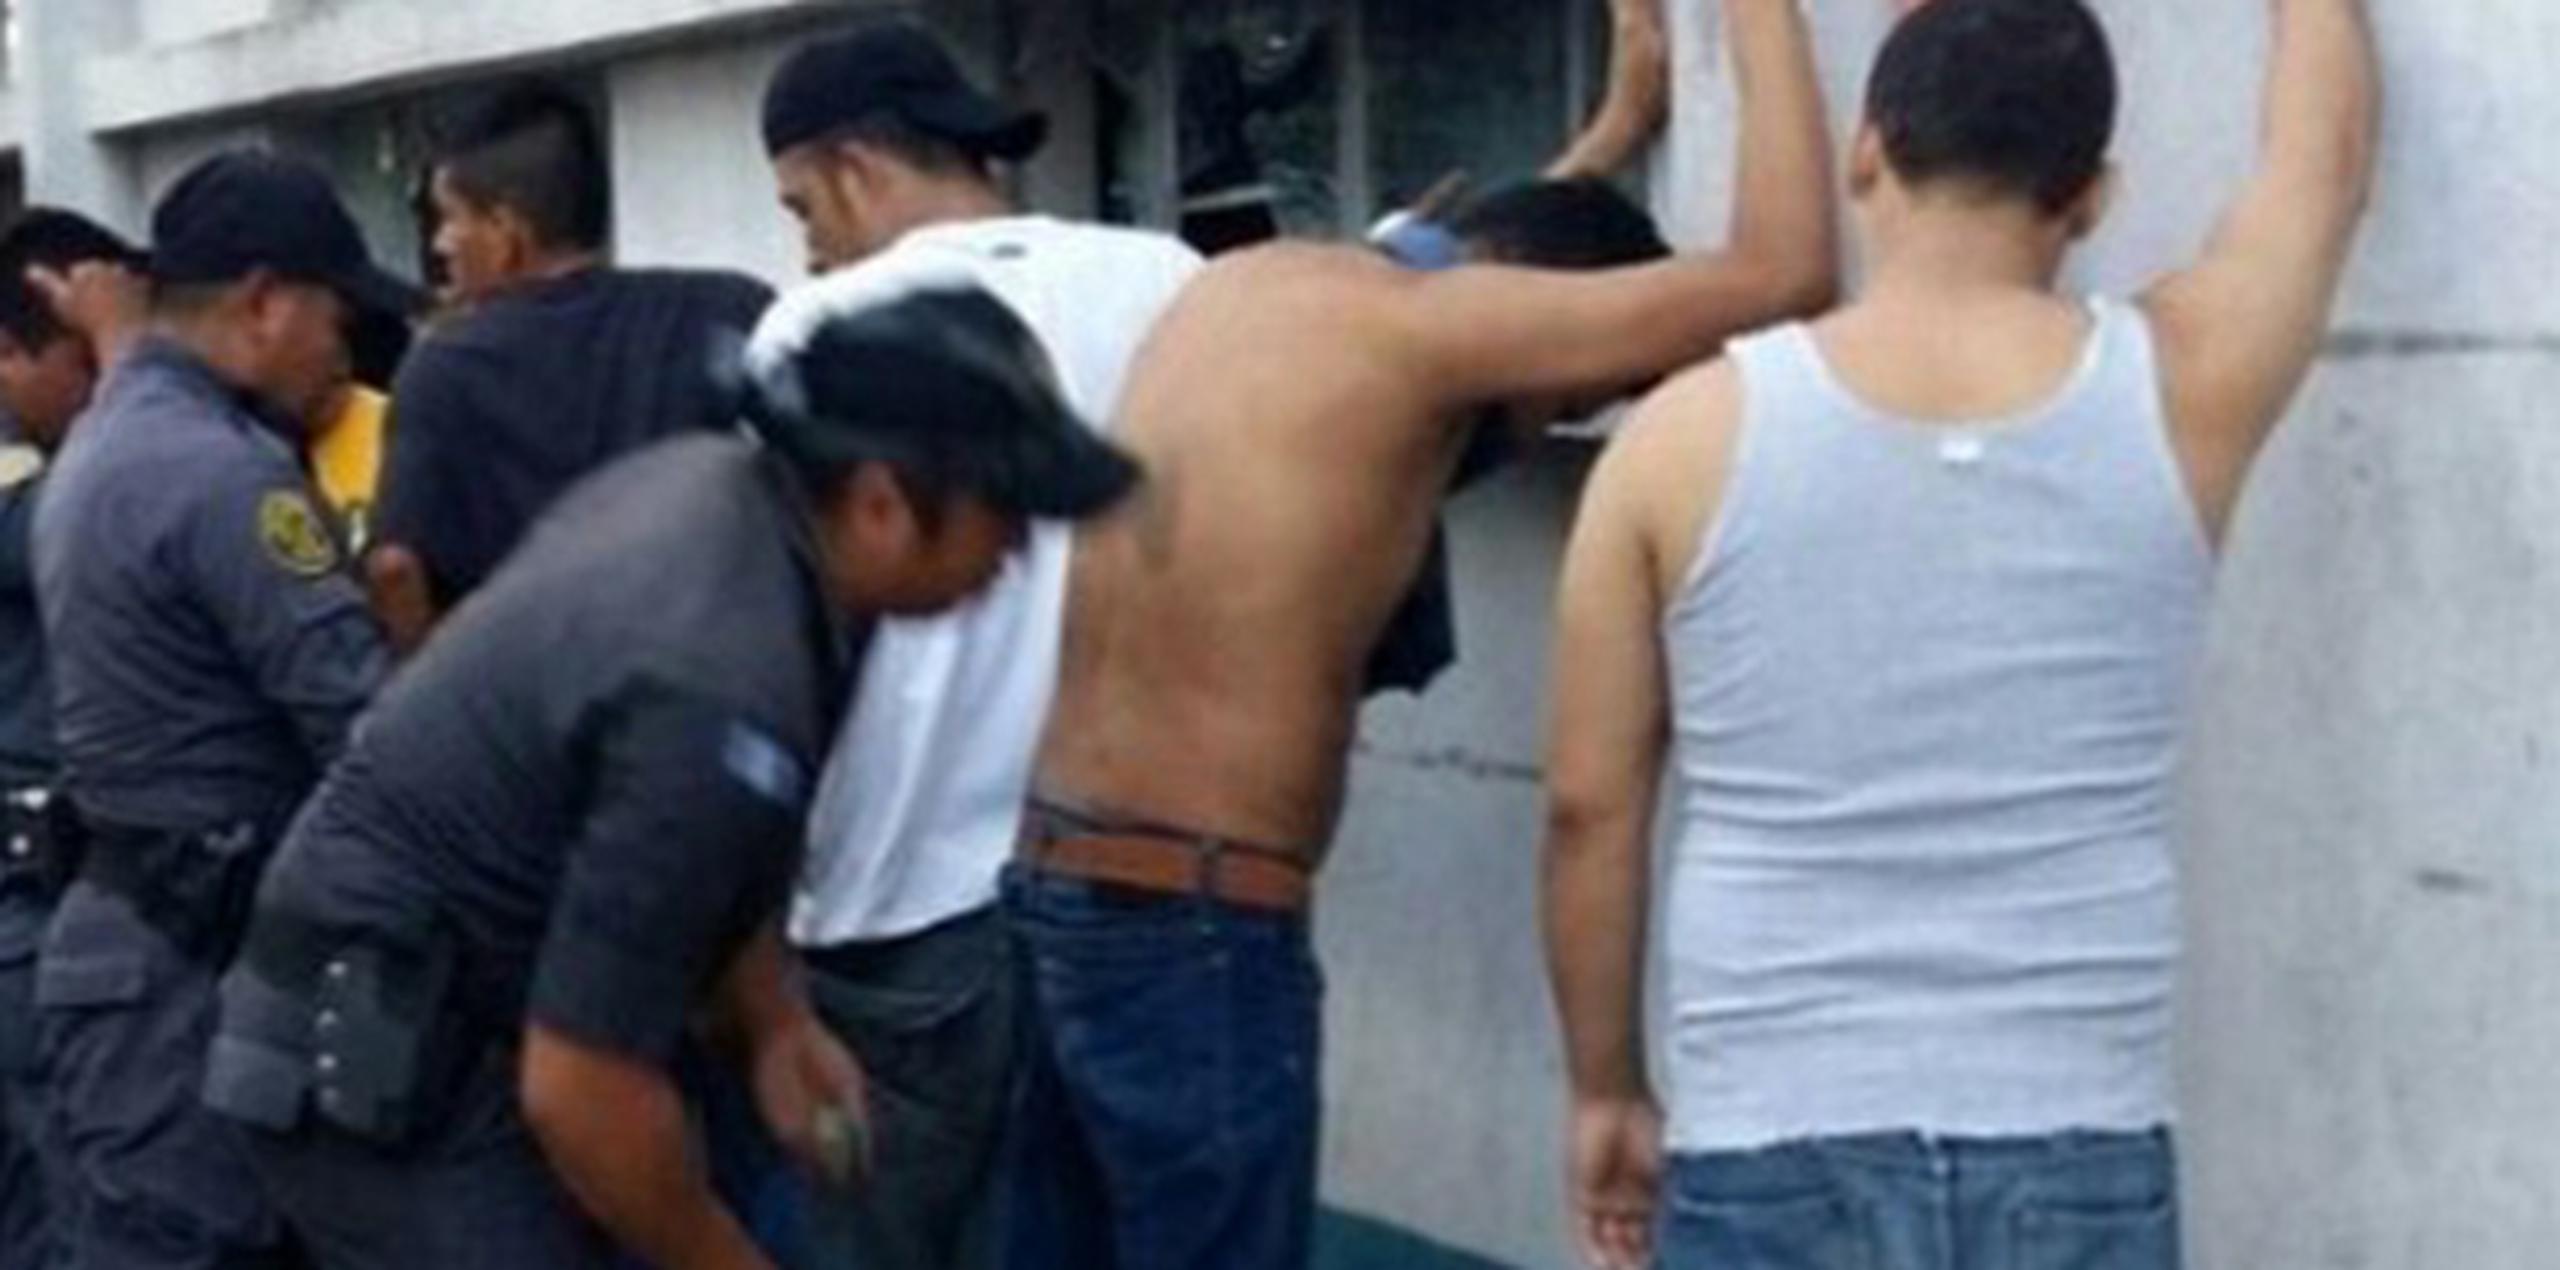 En 2015, los delitos de secuestro en Guatemala se redujeron un 65 por ciento, con una suma de 21 bandas desarticuladas, según estadísticas de la Fiscalía. (Archivo)